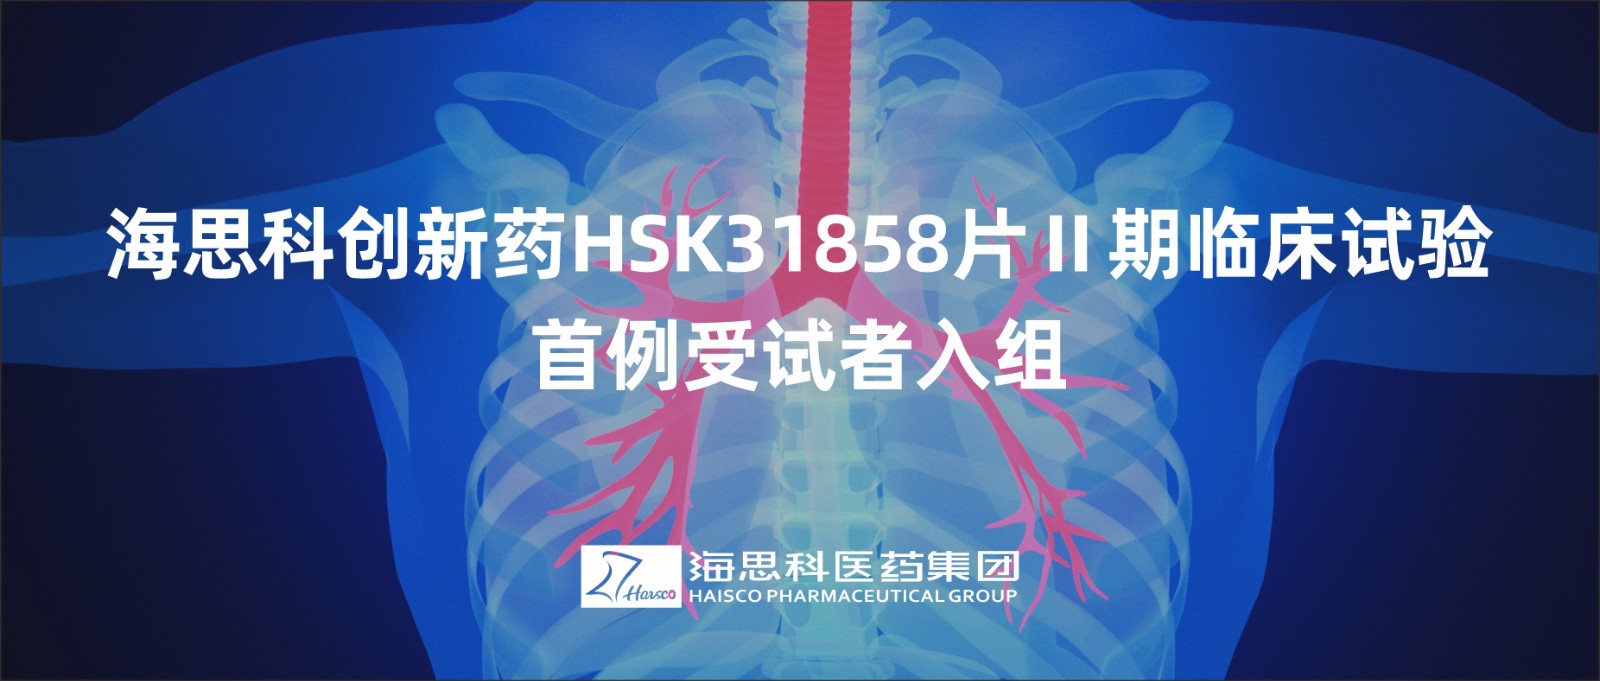 乐鱼游戏app正规版创新药HSK31858片Ⅱ期临床试验首例受试者入组